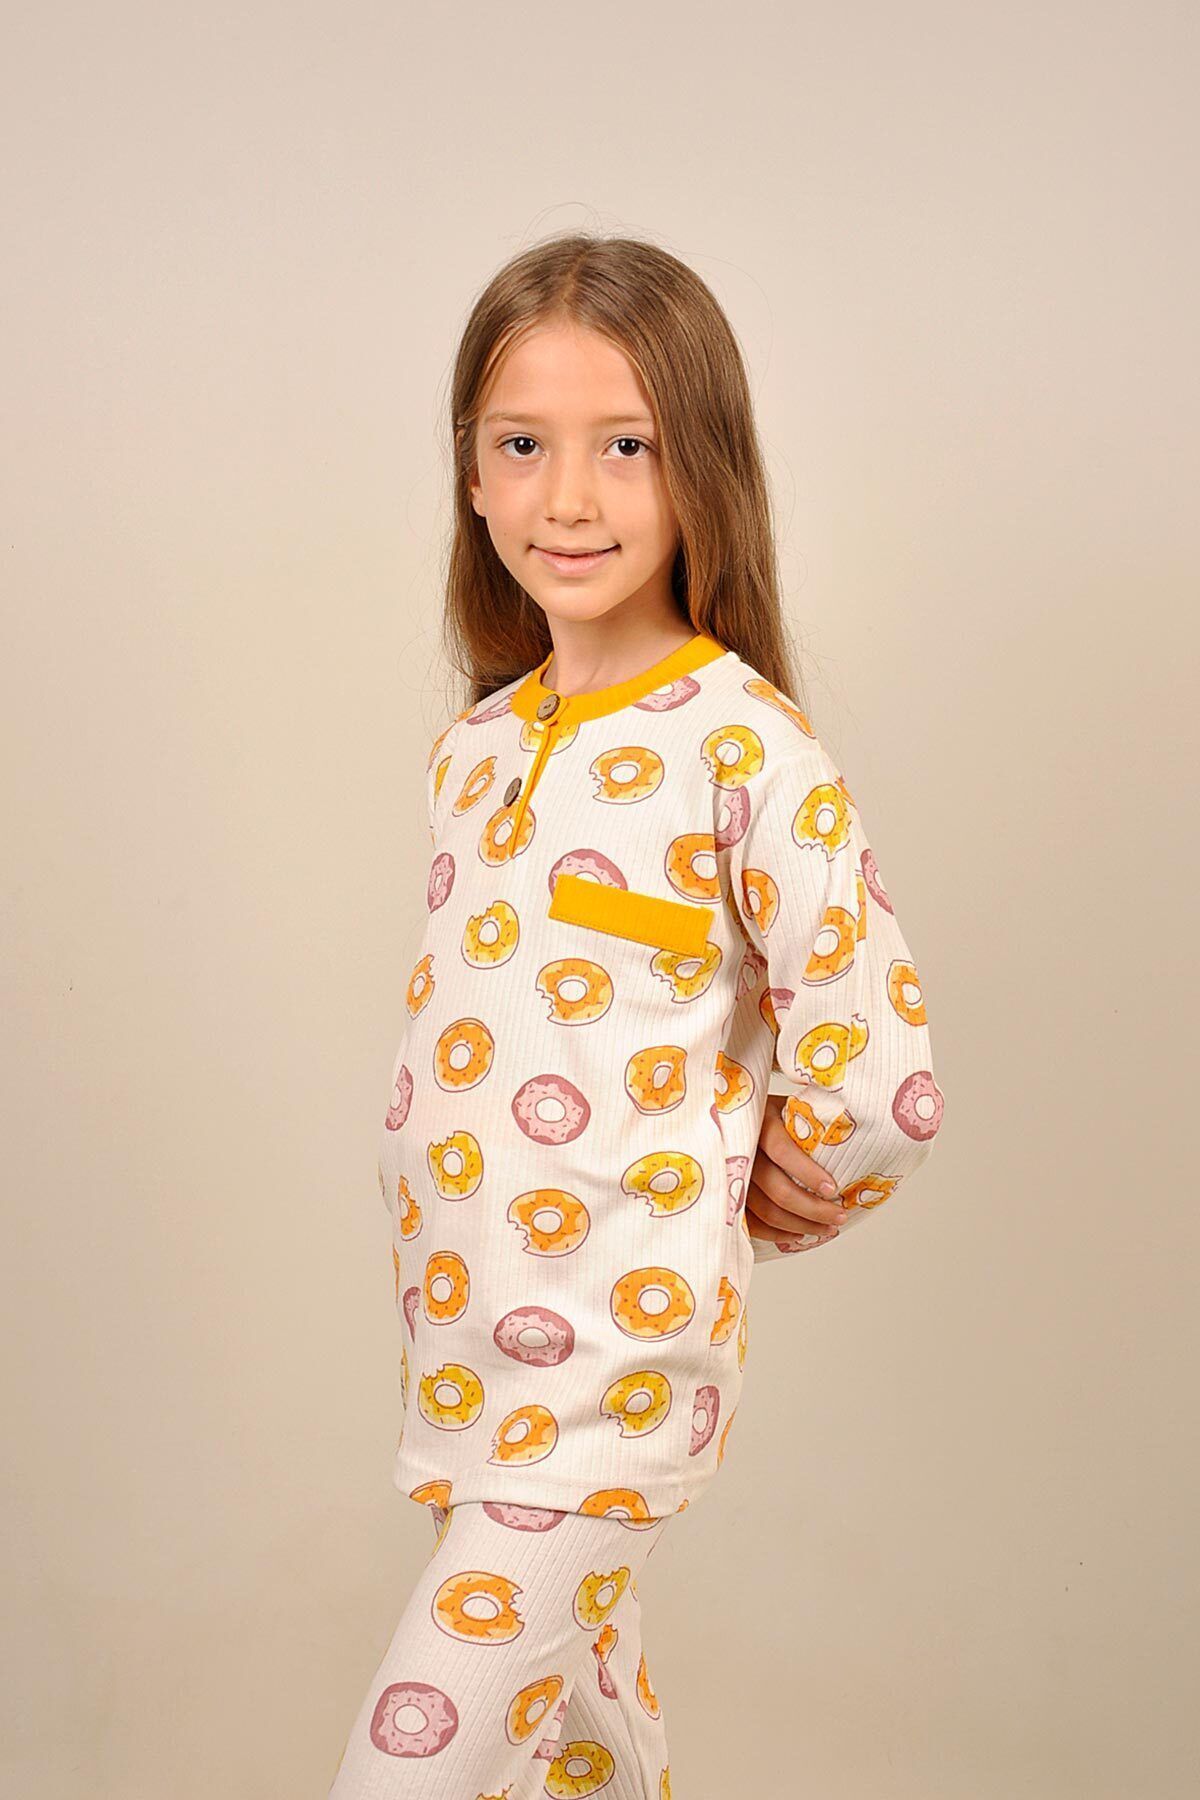 Peki Çocuk 5 Al 4 Öde Yumusak Pamuklu Donut Pasta Genis Kesim Cep Dikis Dügme Patli Pijama Takimi 14967